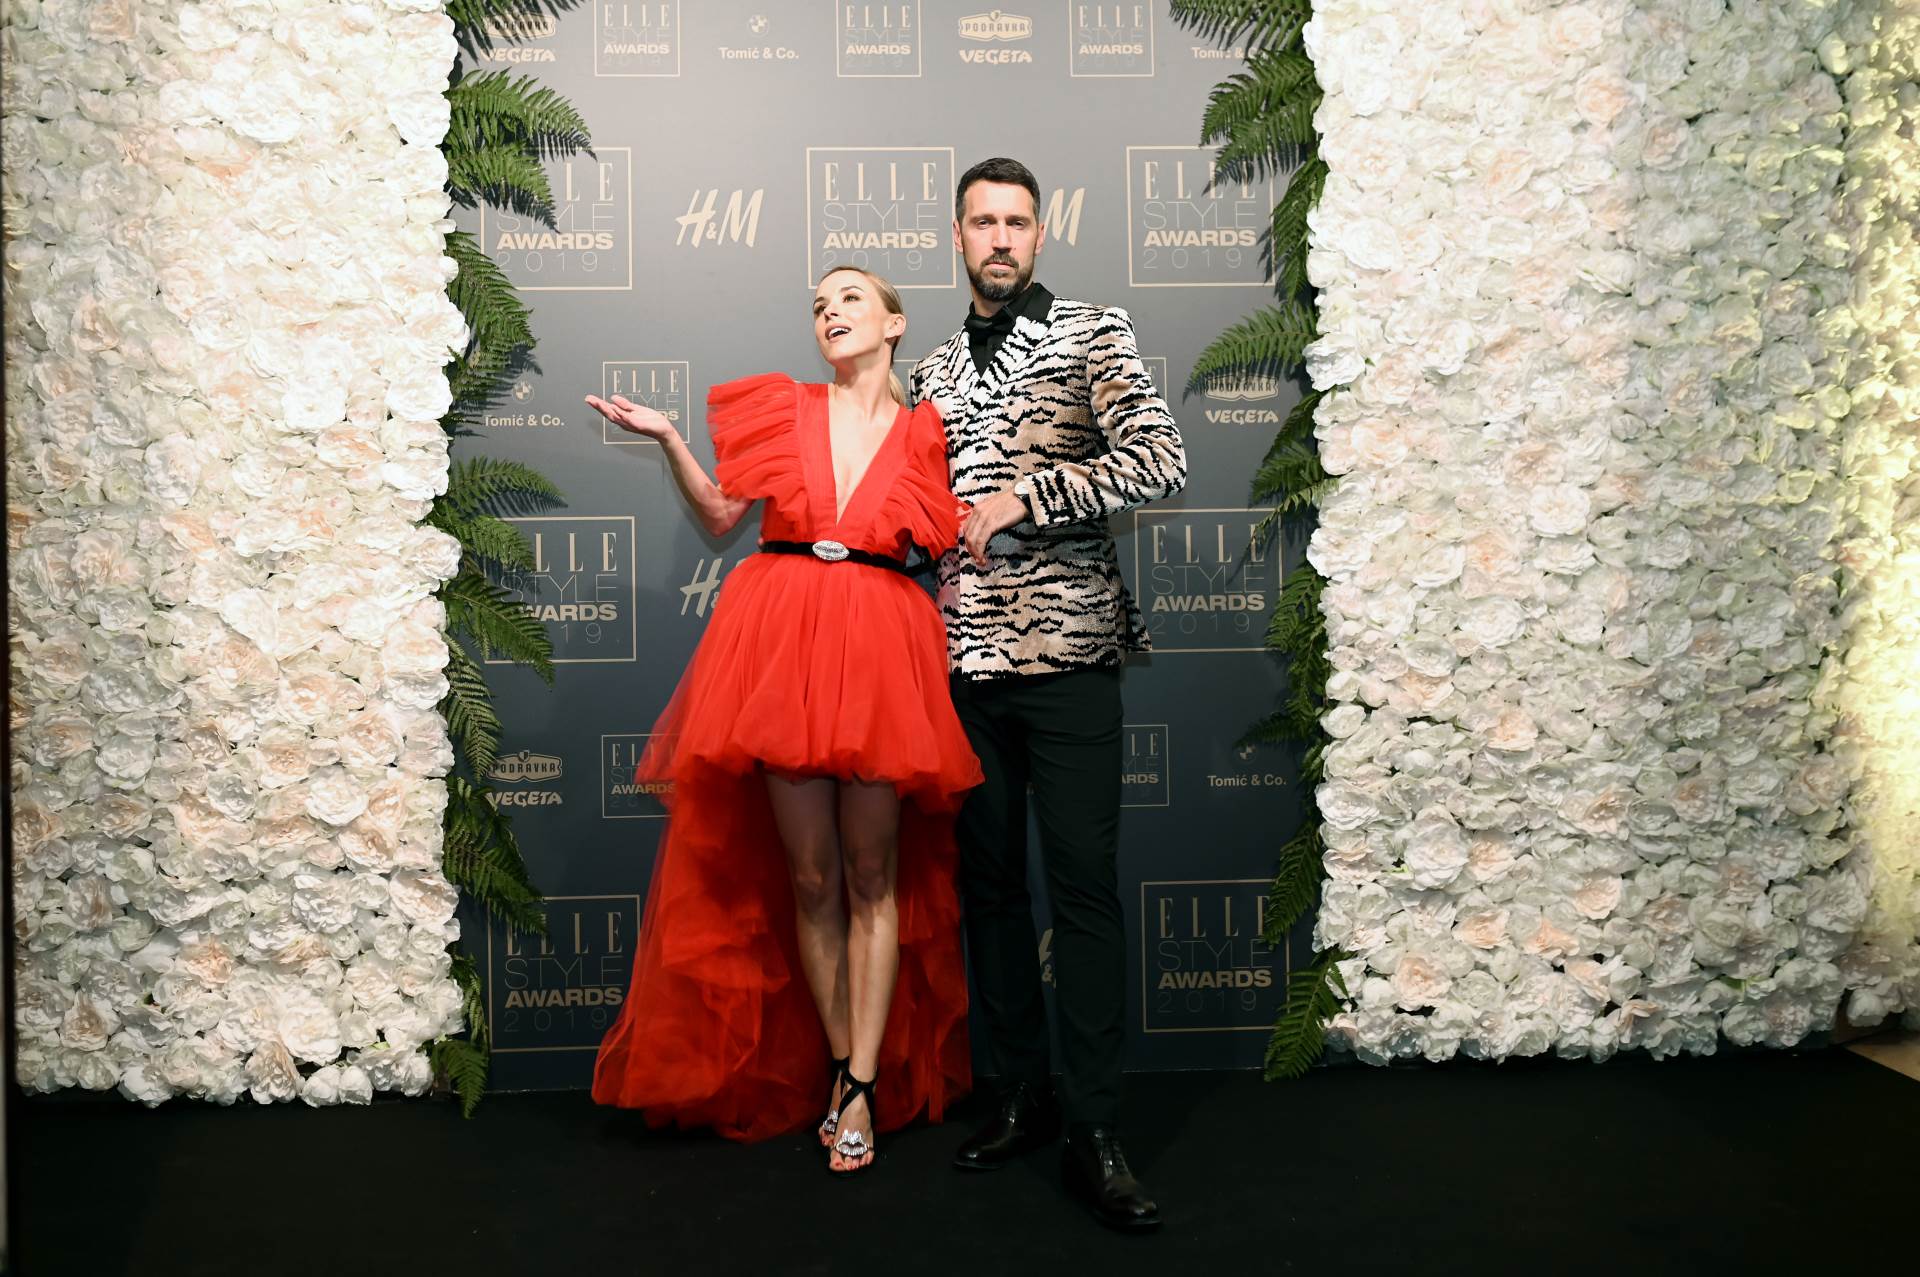 Voditelji Iva Šulentić i Ivan Vukušić su zablistali u ekskluzivnim kreacijama generalnog partnera Elle Style Awardsa H&M s potpisom Giambattista Valli